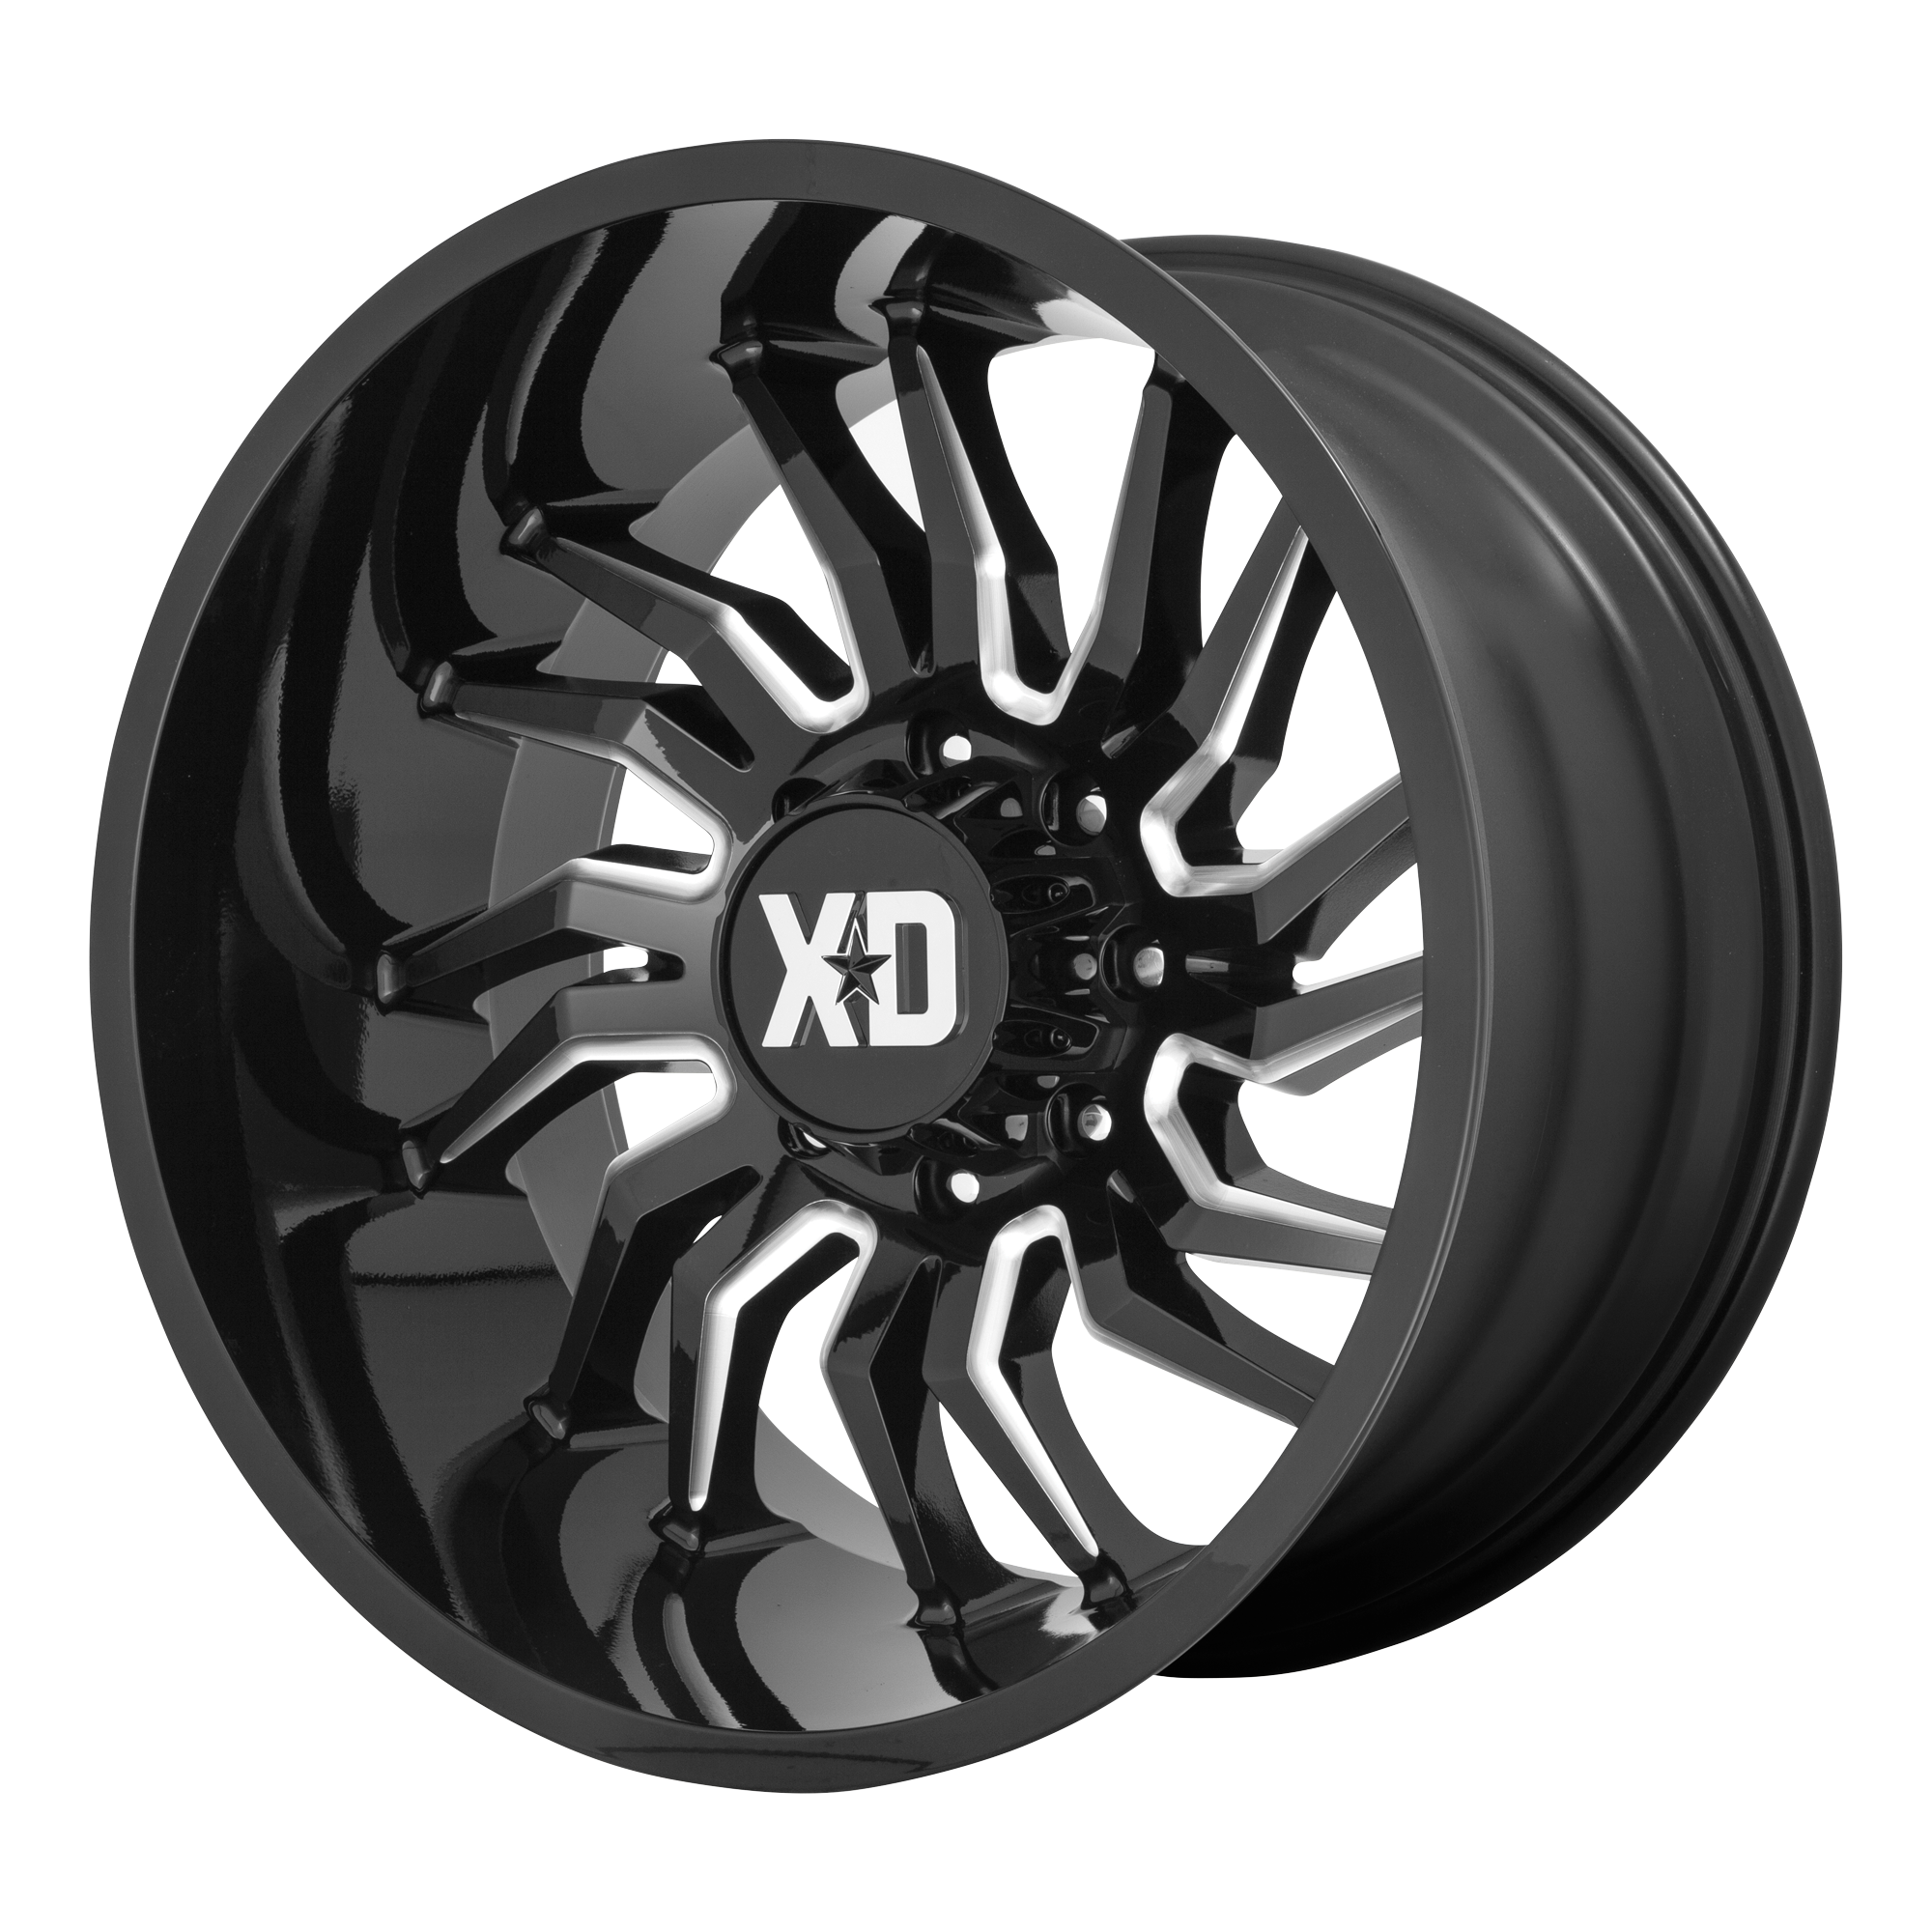 XD 22"x12" Non-Chrome Gloss Black Milled Custom Wheel ARSWCWXD85822268344N